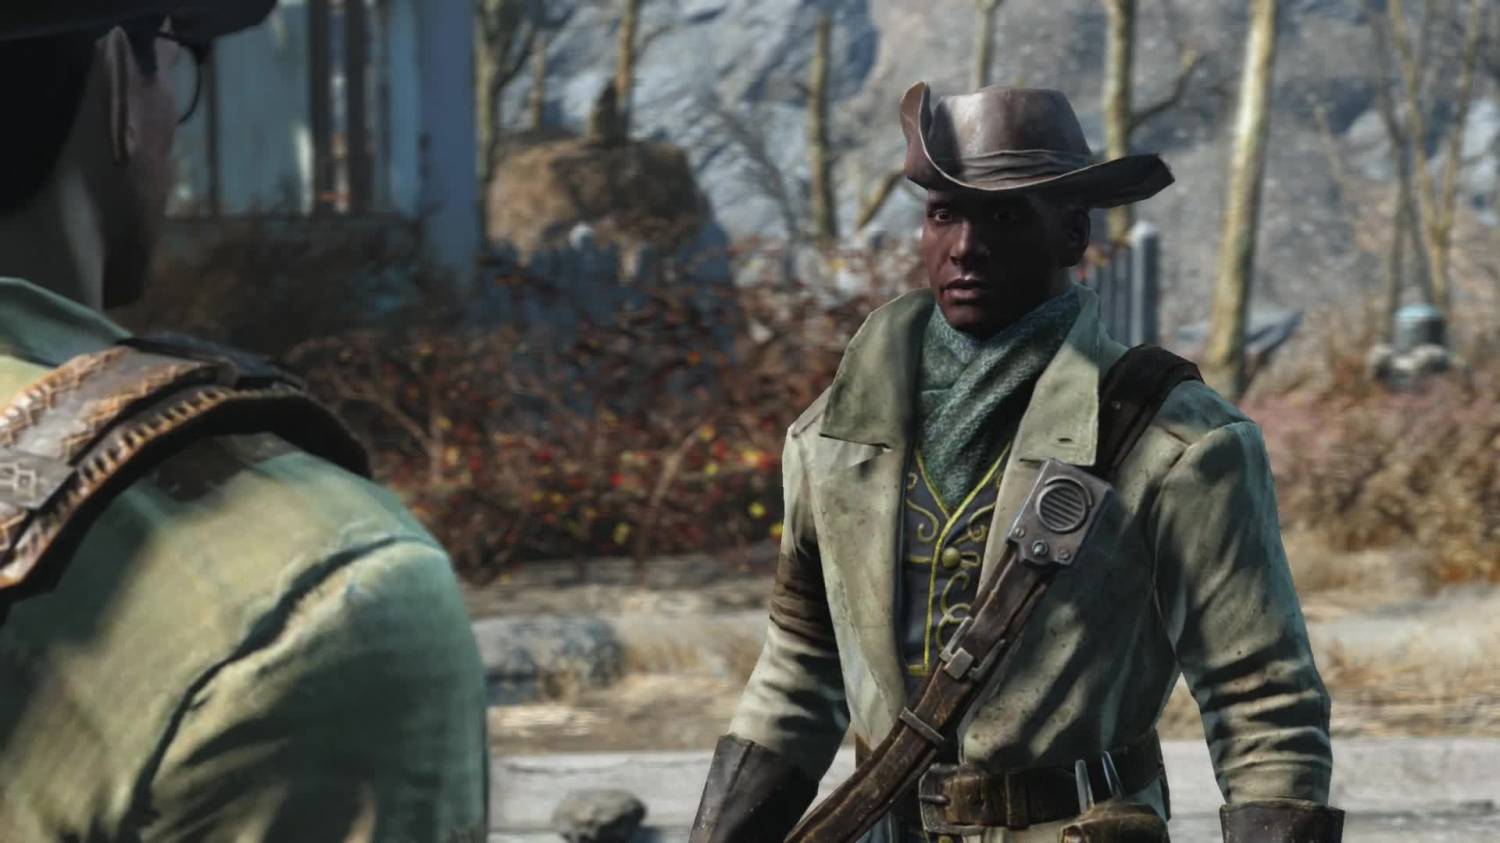 Fallout 4 престон гарви не разговаривает в сэнкчуари после конкорда фото 82